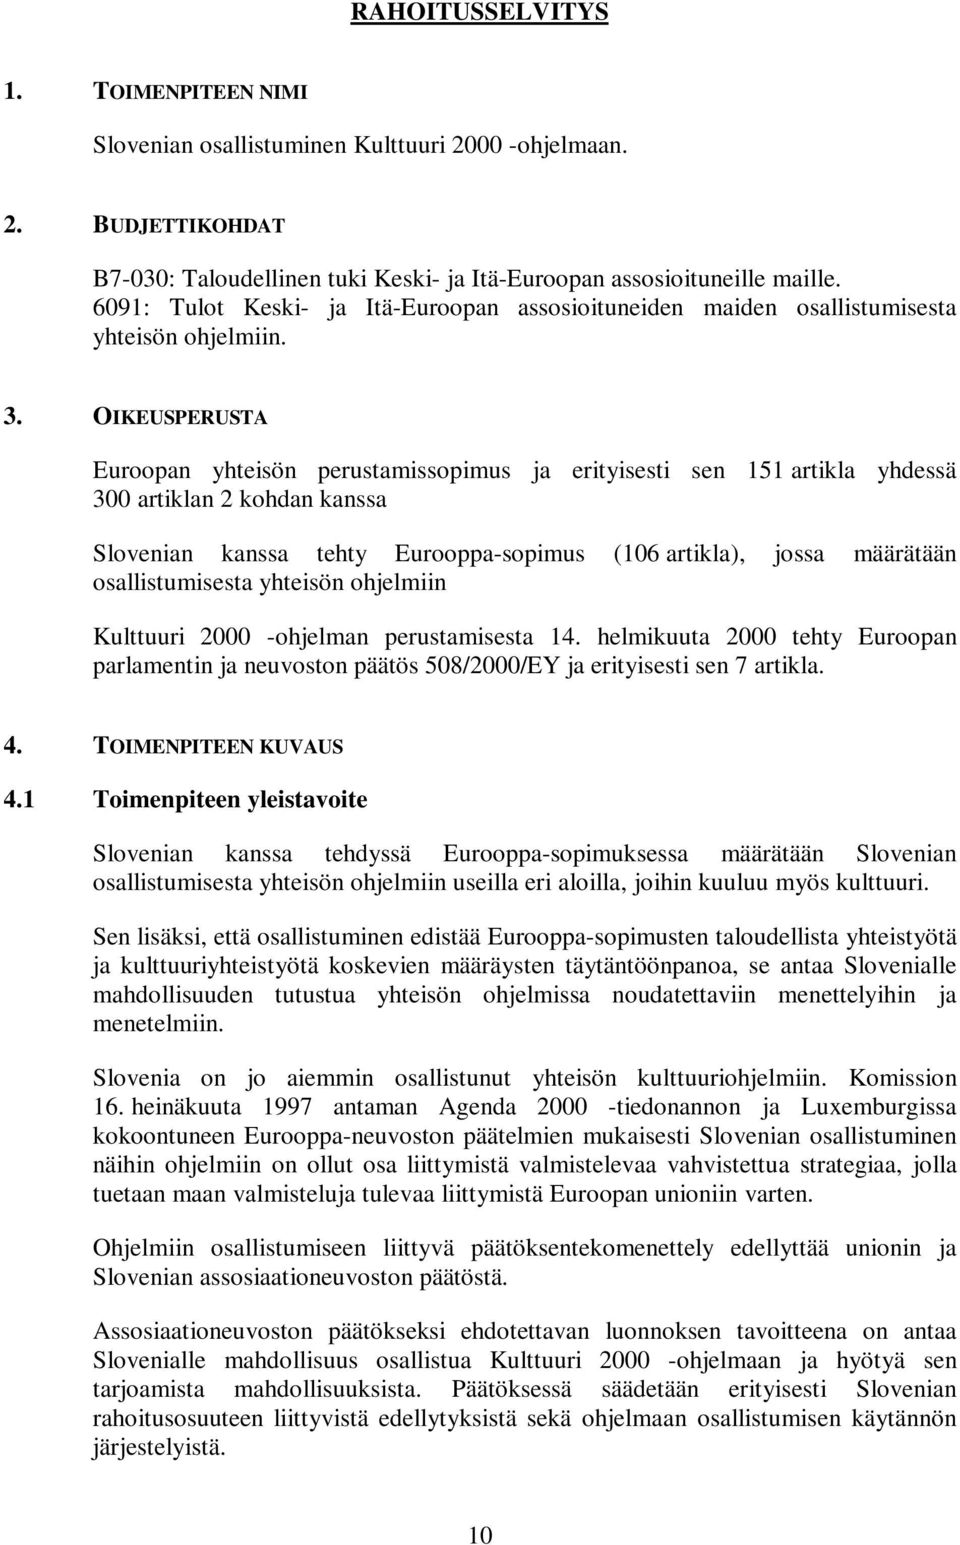 OIKEUSPERUSTA Euroopan yhteisön perustamissopimus ja erityisesti sen 151 artikla yhdessä 300 artiklan 2 kohdan kanssa Slovenian kanssa tehty Eurooppa-sopimus (106 artikla), jossa määrätään